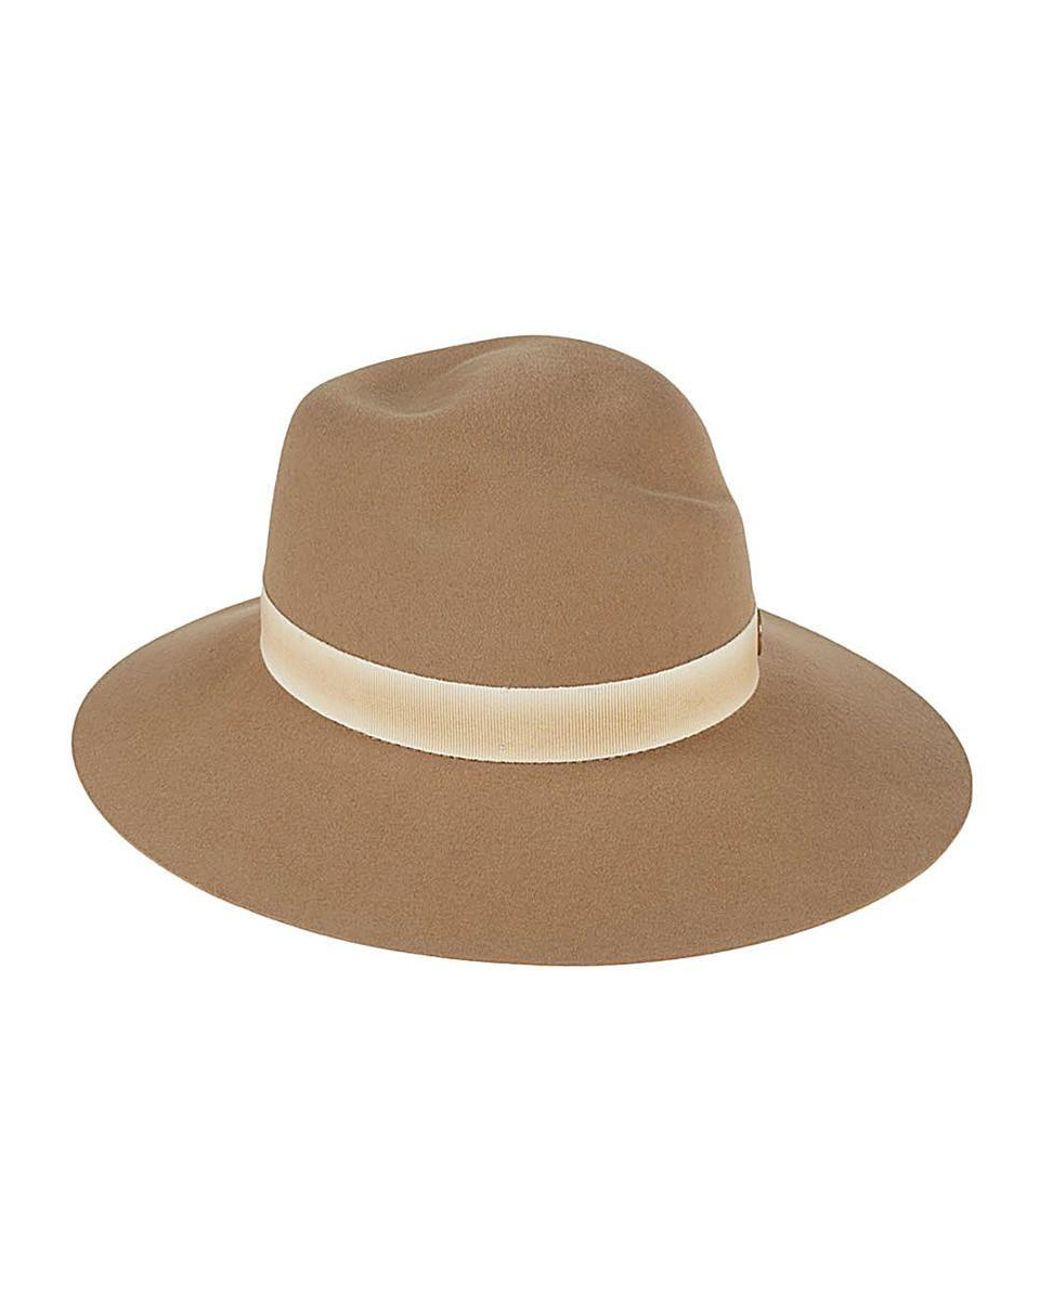 Maison Michel Virginie Rabbit Wool Fedora Hat in Natural | Lyst